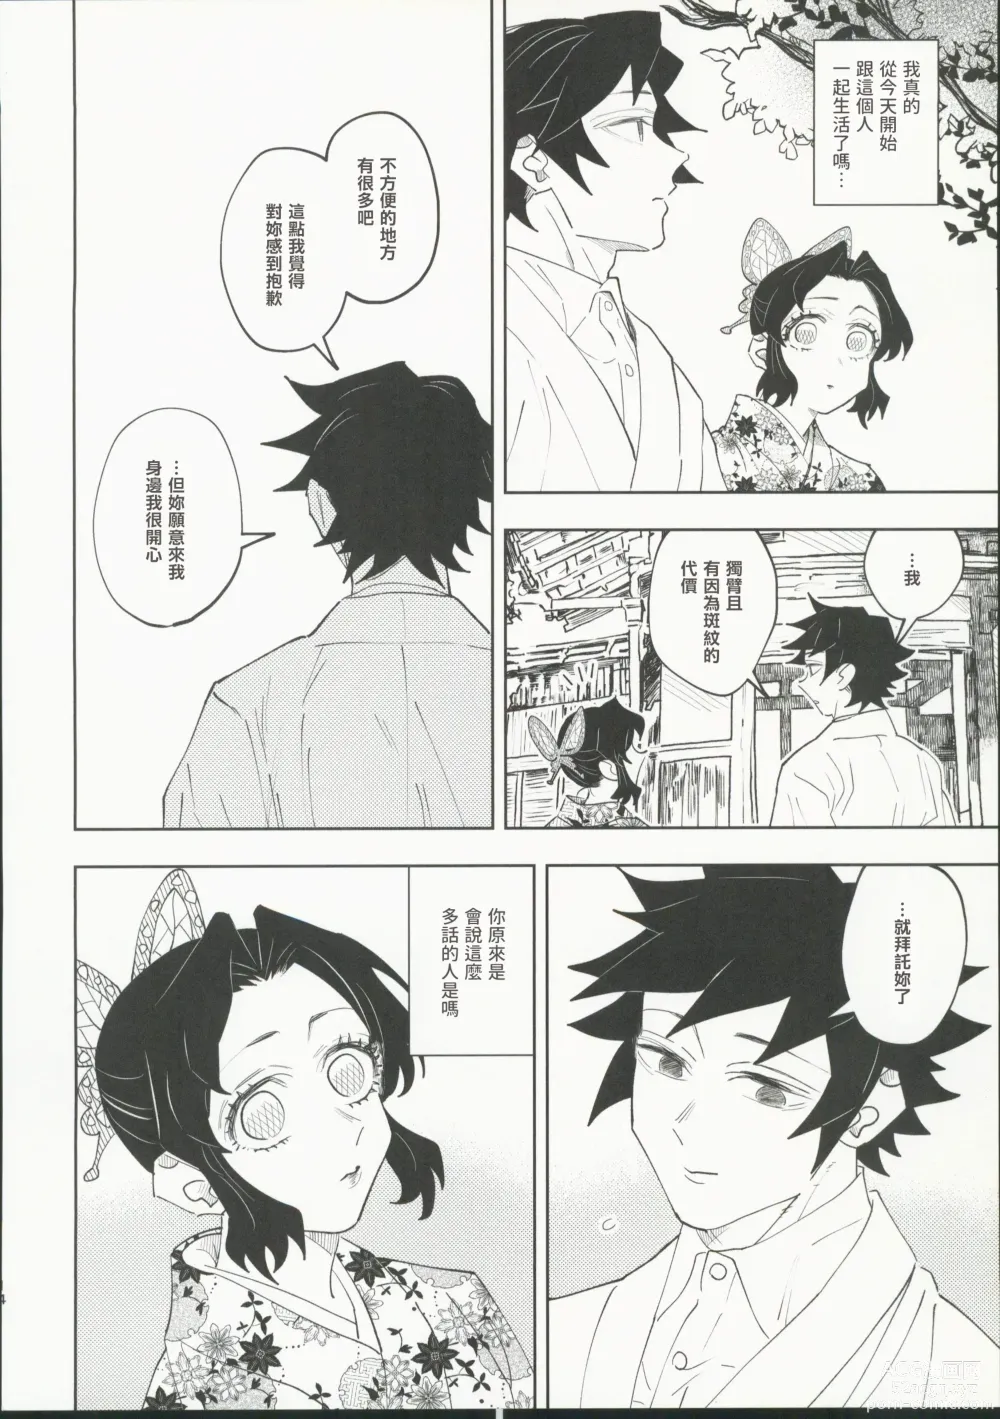 Page 13 of doujinshi Hazama